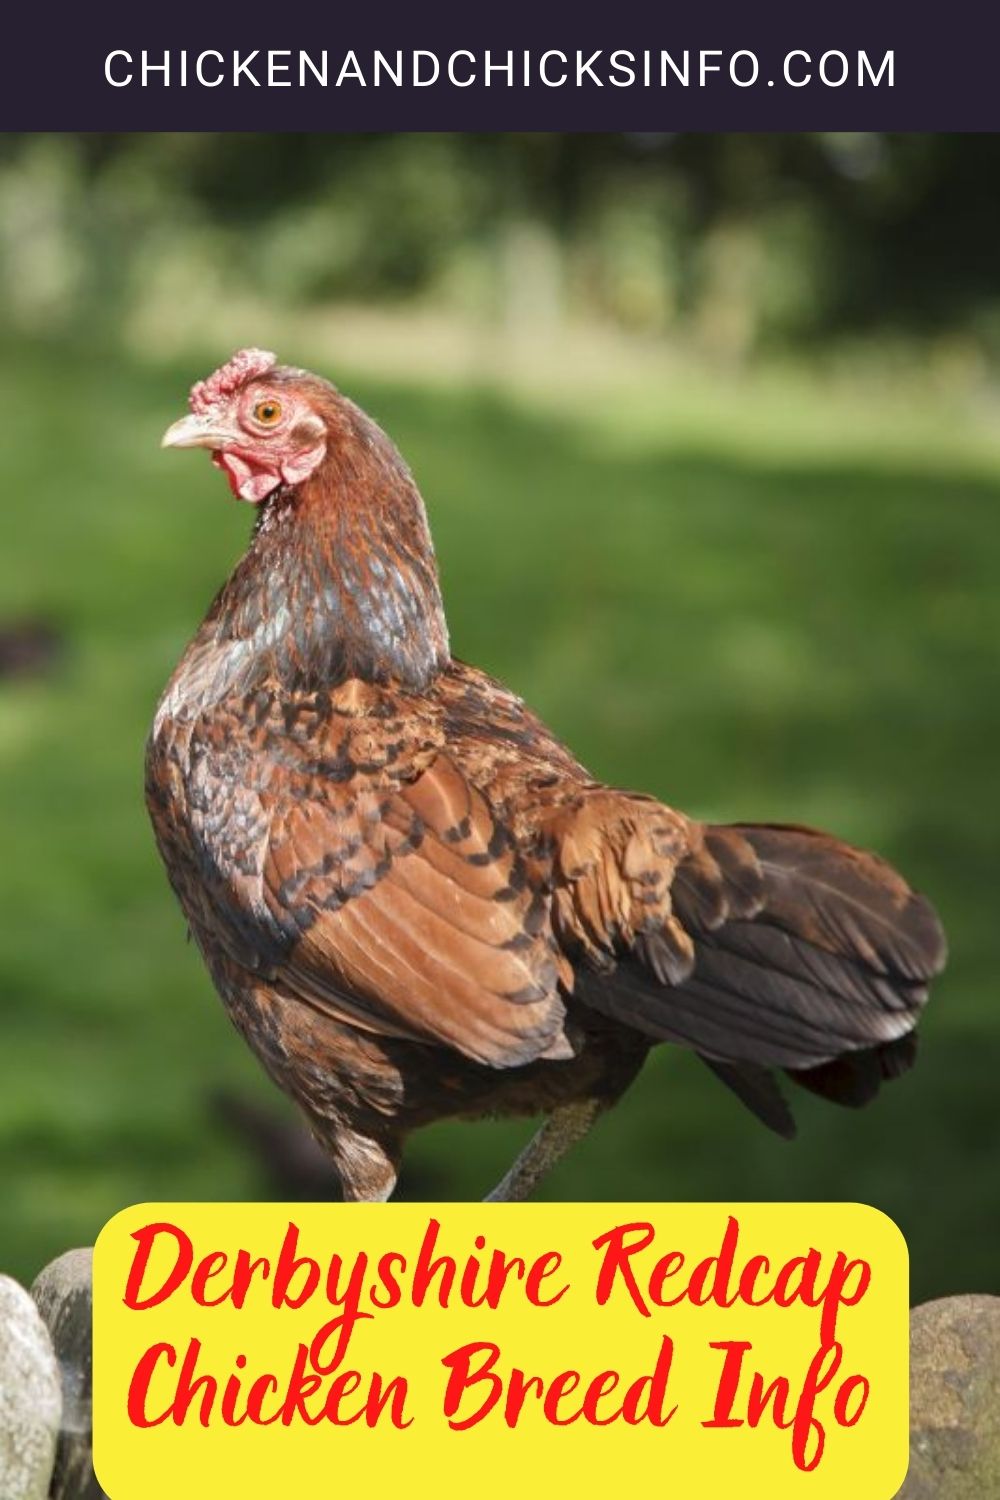 Derbyshire Redcap Chicken Breed Info pinterest image.